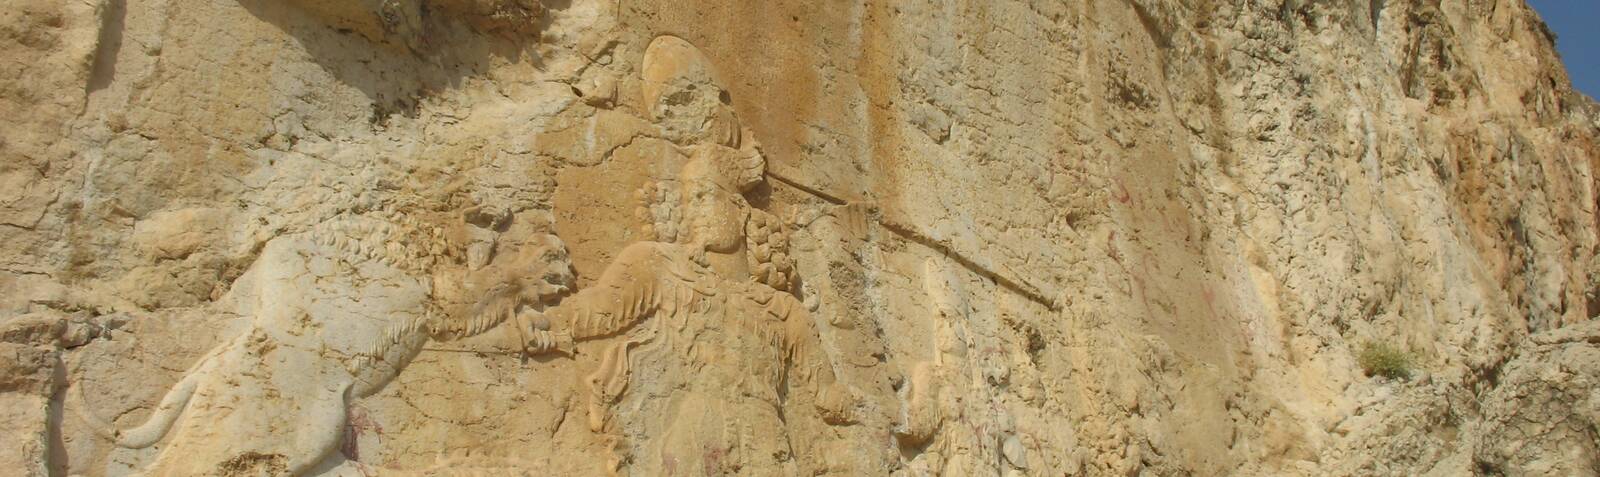 نقش برجسته بهرام دوم و كتيبه بزرگ ساساني در سرمشهد